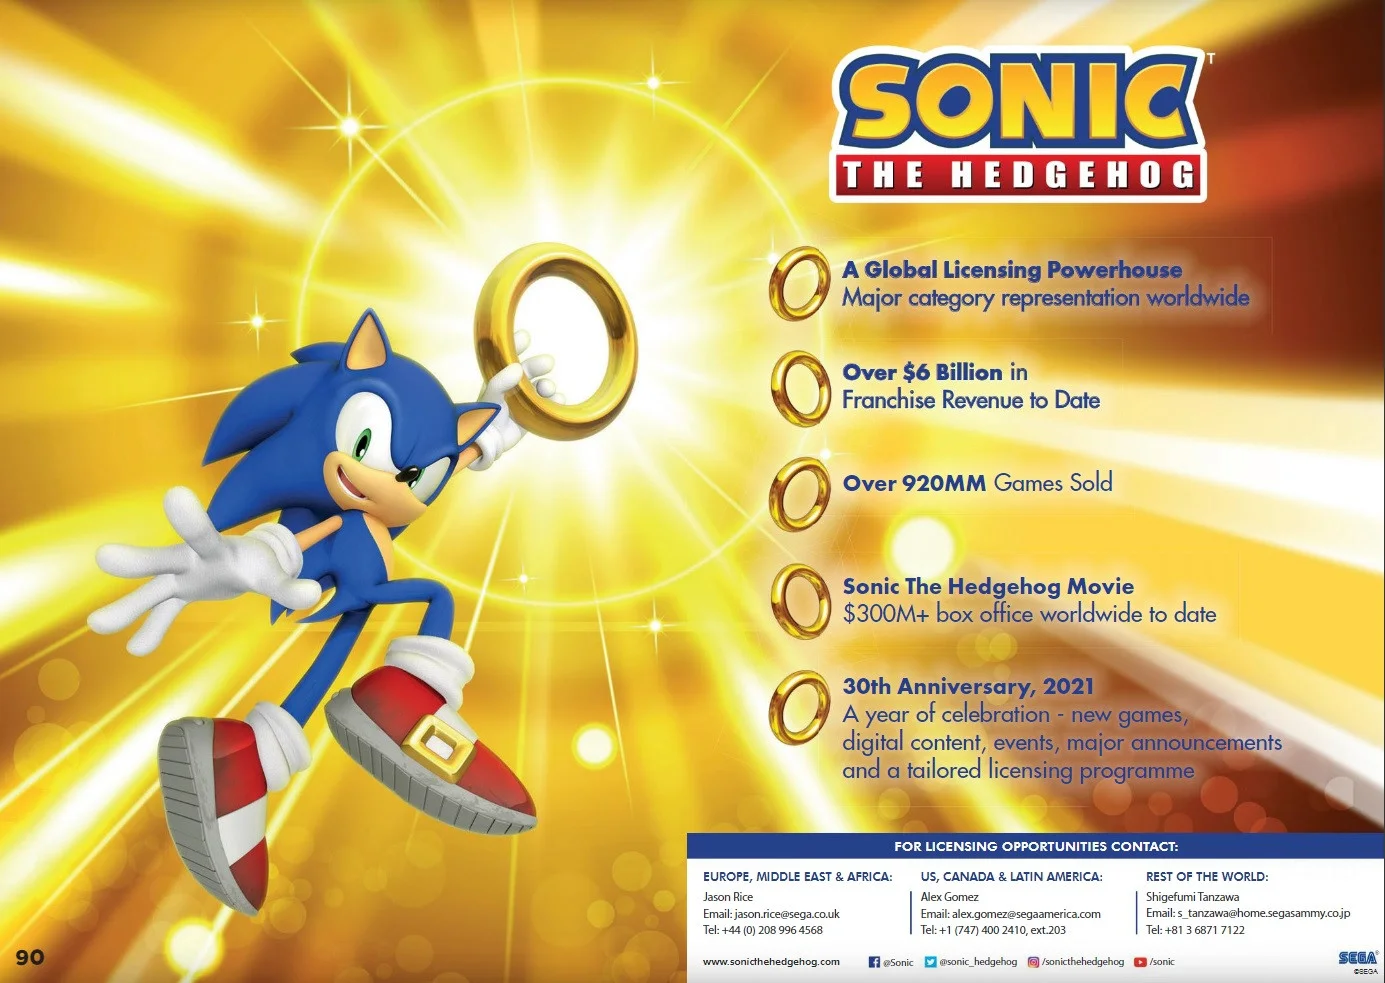 SEGA отпразднует 30-летие Sonic the Hedgehog новыми играми и крупными анонсами - фото 1